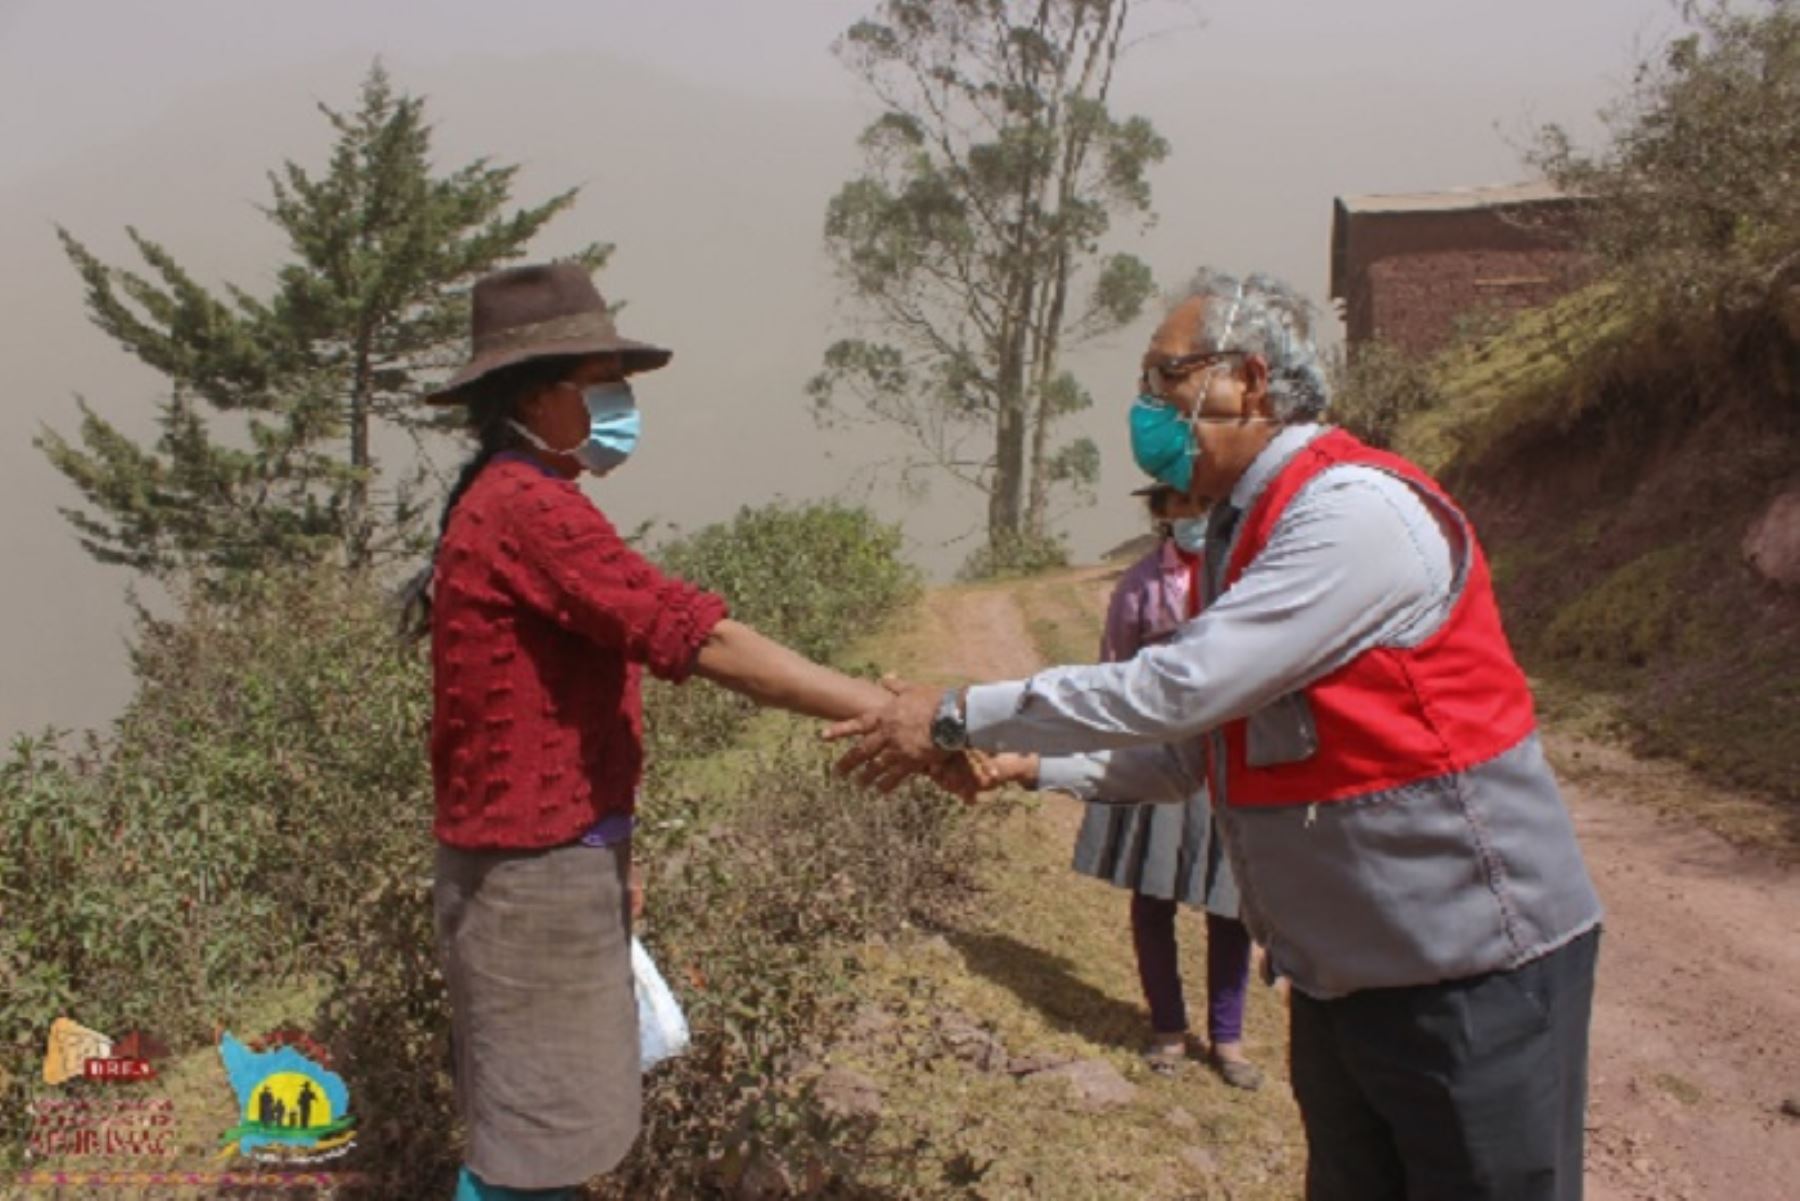 El director regional de Educación de Apurímac, Tito Medina Warthon, visitó las comunidades de Llactabamba y Soccoro en el distrito de Huancarama, provincia de Andahuaylas, cuya población es la más afectada por la polvareda provocada por el deslizamiento de tierra en el cerro Chamanayoc.